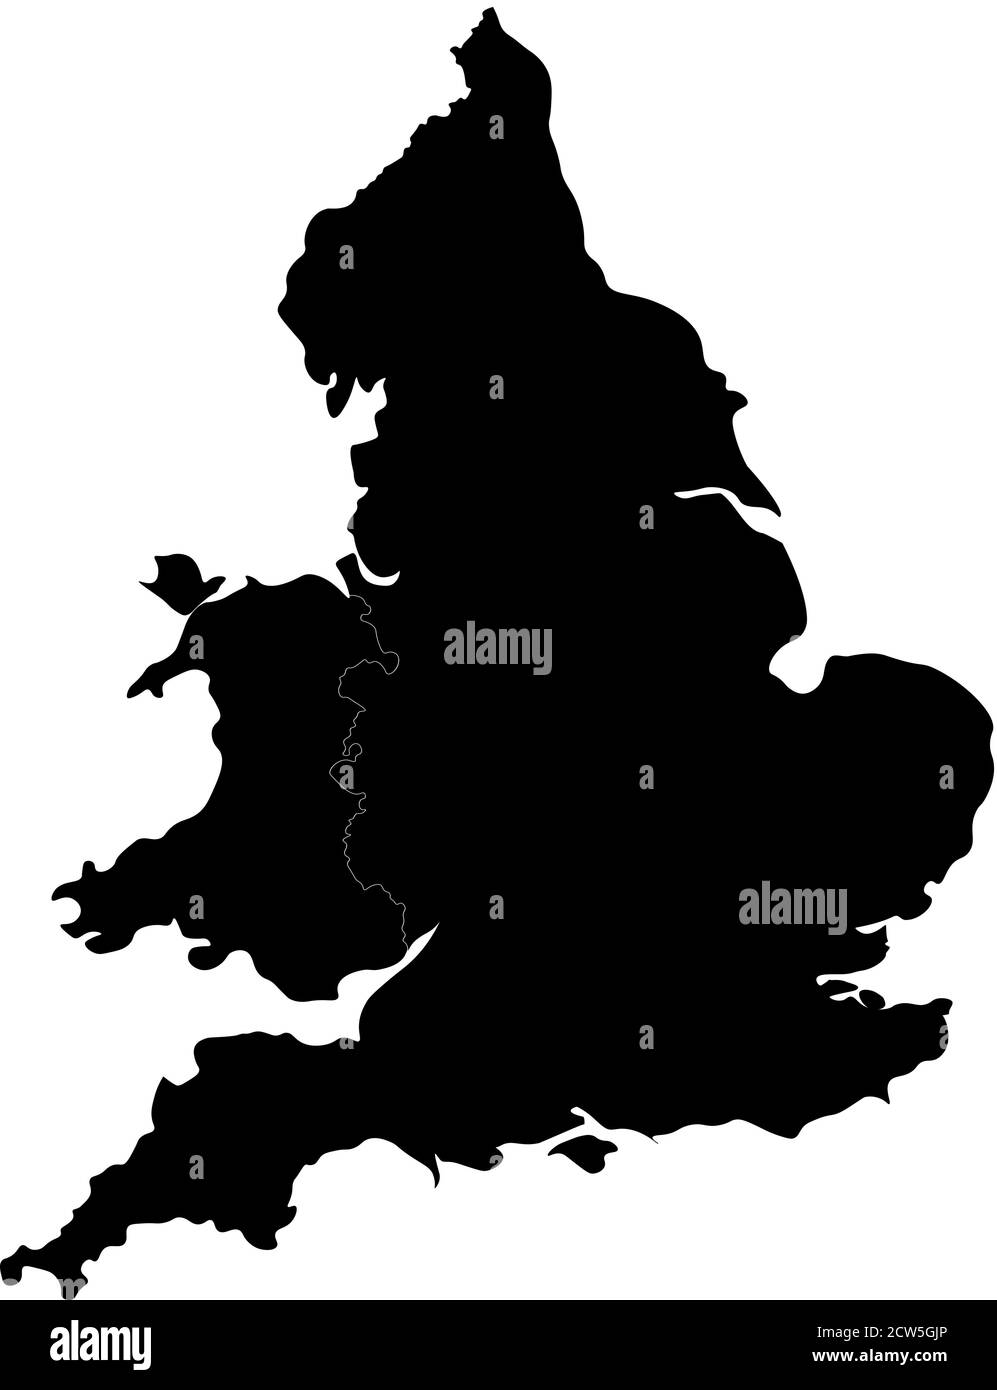 Silhouette di Inghilterra e Galles. Mappa dalla forma gradevole con bordi arrotondati per un look elegante. Illustrazione vettoriale. Illustrazione Vettoriale